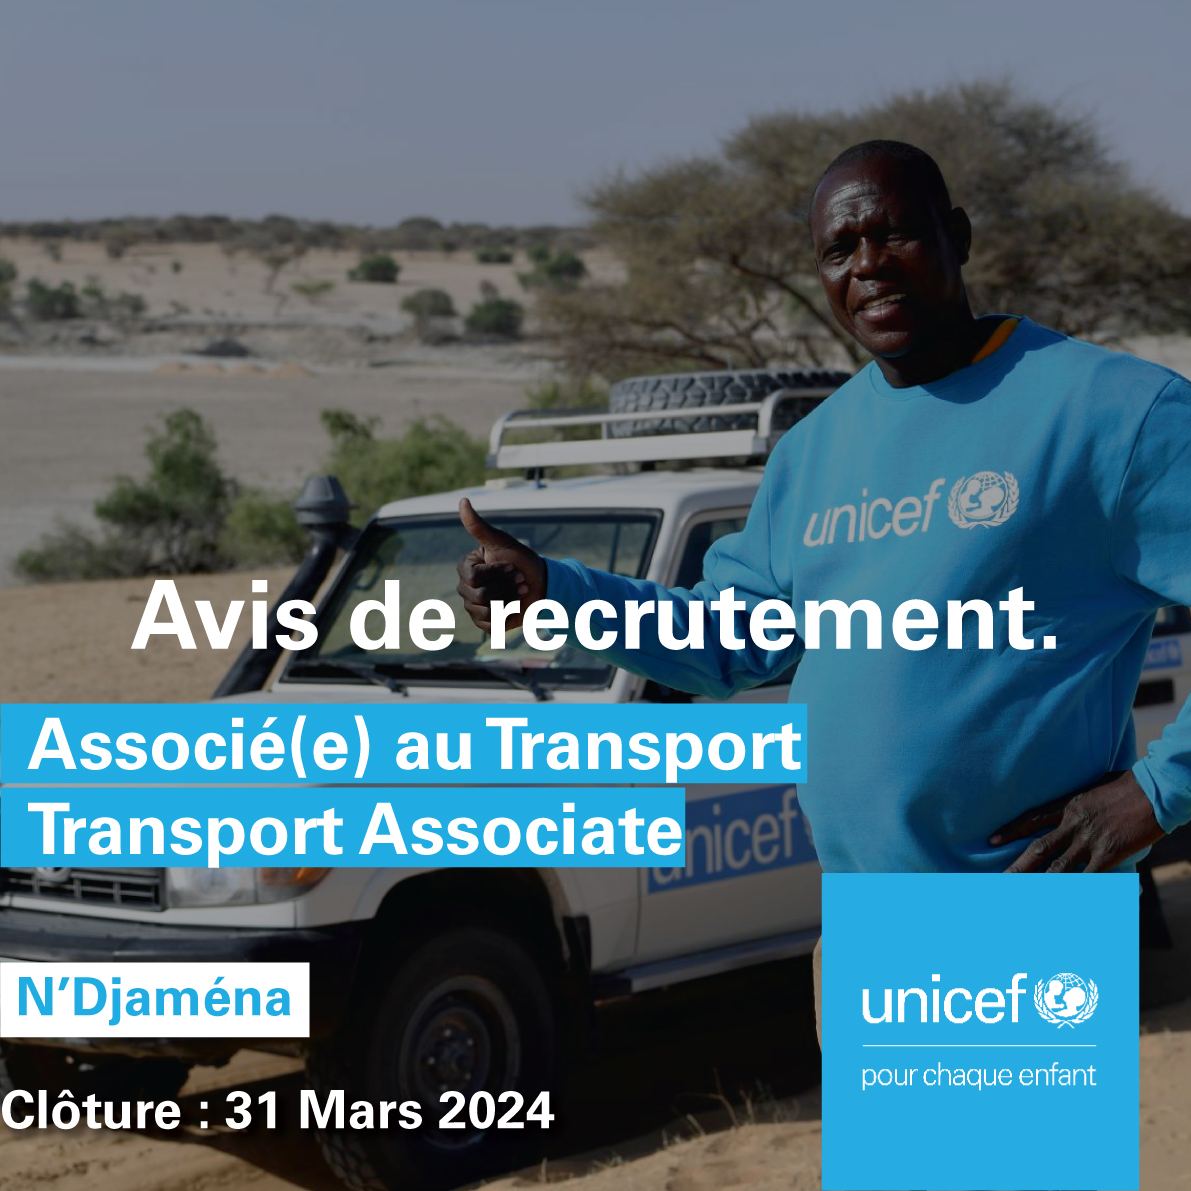 #OnRecrute : Associé(e) au Transport - Transport Associate 🚘 👉🏽 Pour postuler : uni.cf/3VlH7ei 👥Candidats nationaux uniquement ⏳ Contrat à durée déterminée 📍N'Djaména, #Tchad 🕓Date limite : 31 Mars 2024 #PourChaqueEnfant 💙